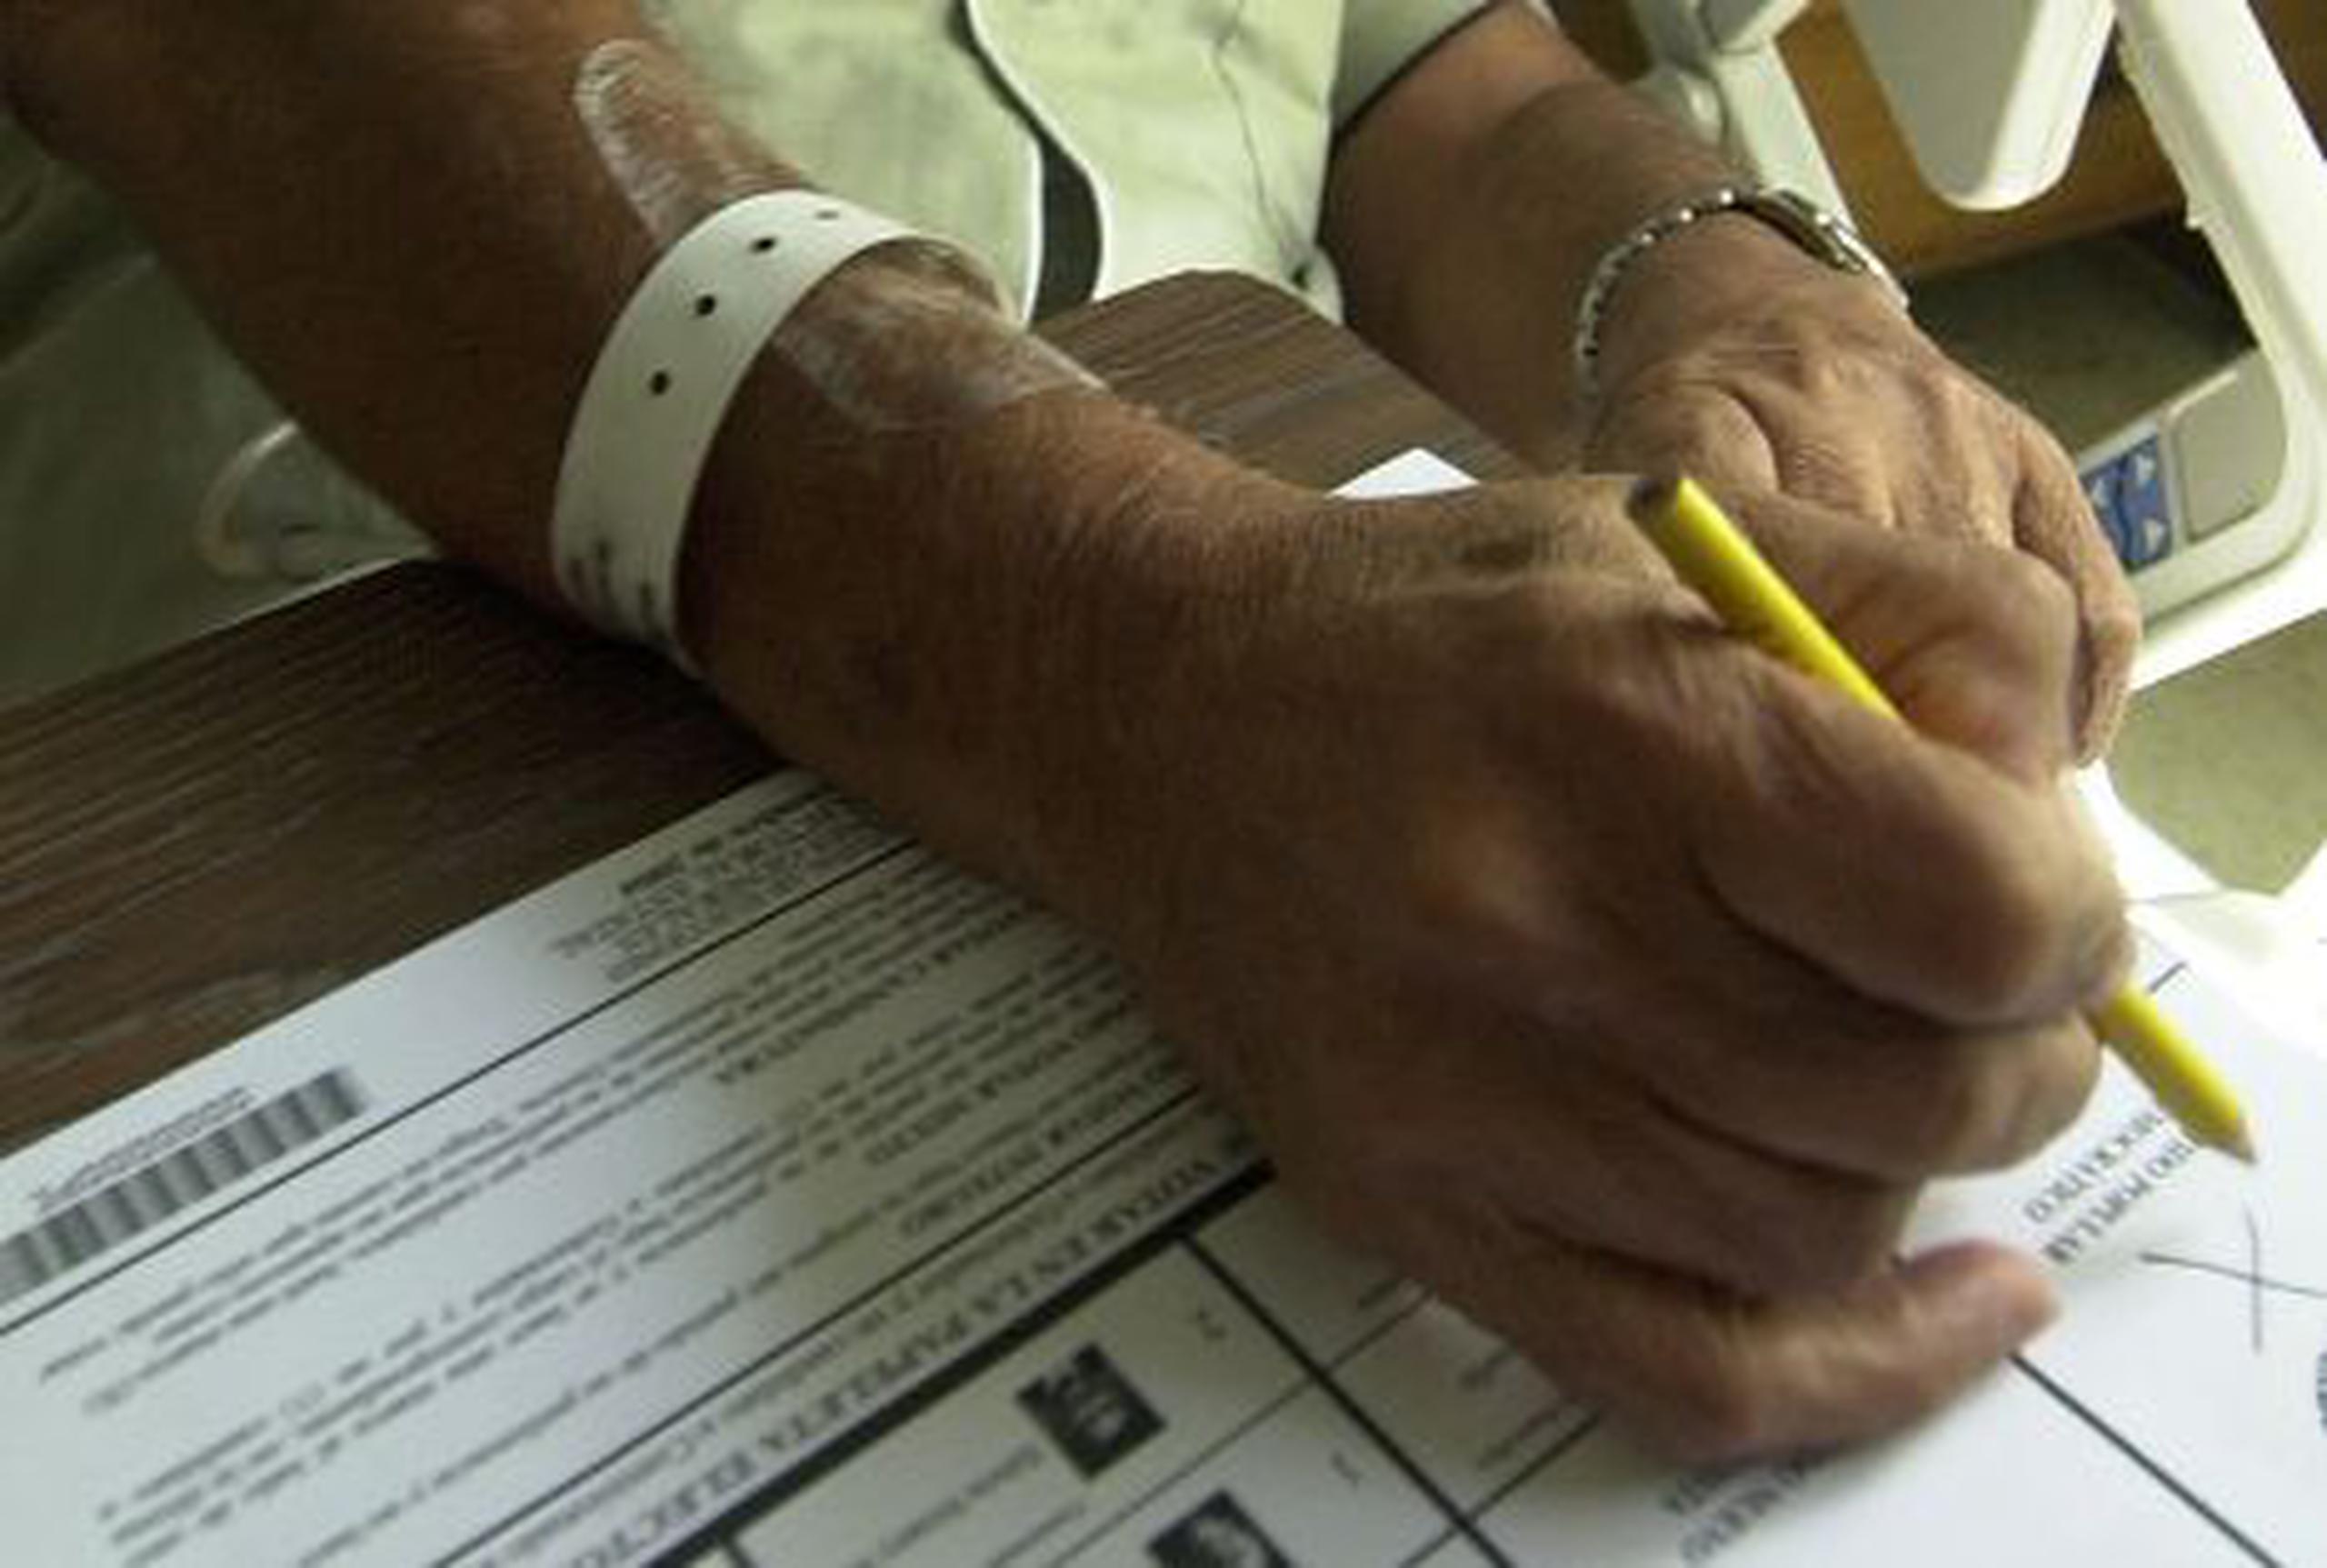 A las personas que ejerzan hoy el derecho al voto desde los hospitales donde estén recluidas  se les entintará el dedo para evitar cualquier tipo de fraude. <font color="yellow">(Archivo)</font>